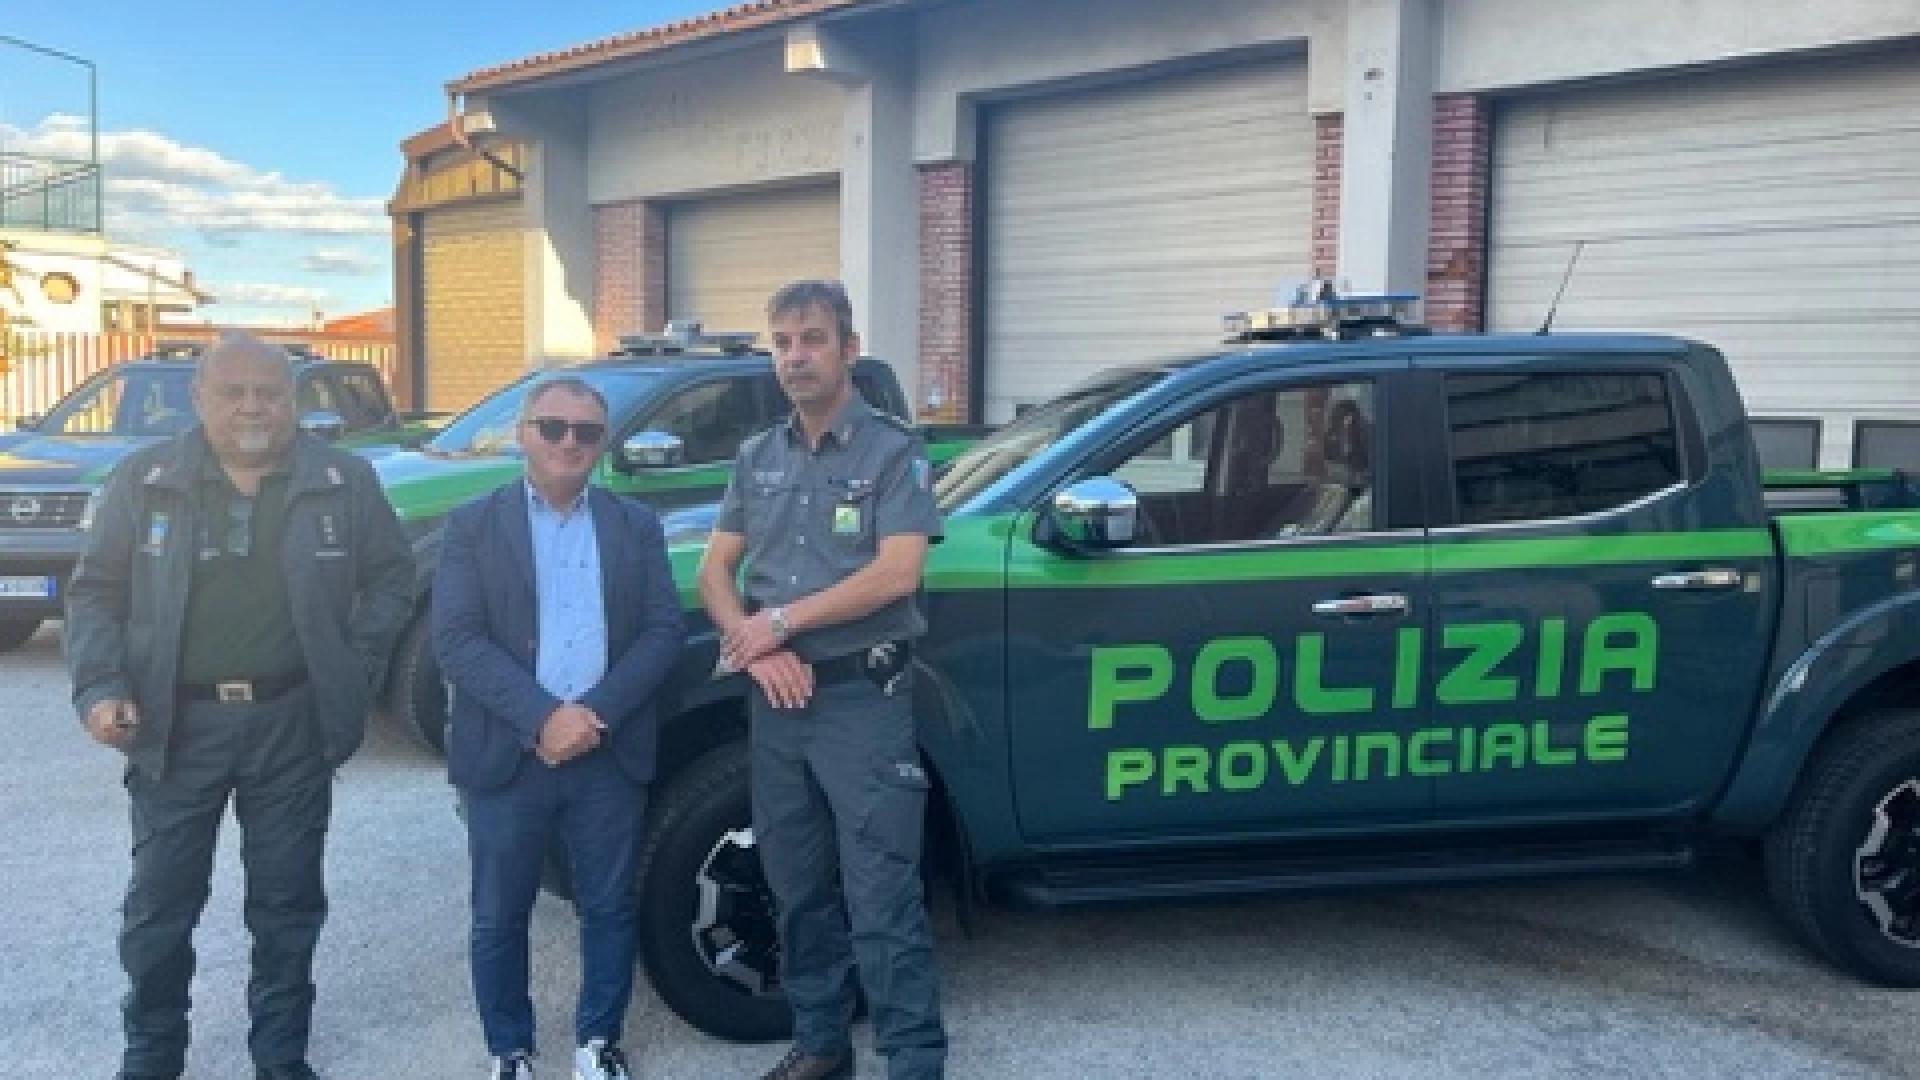 Polizia Provinciale dell’Aquila, nuovi mezzi in dotazione per gli agenti.